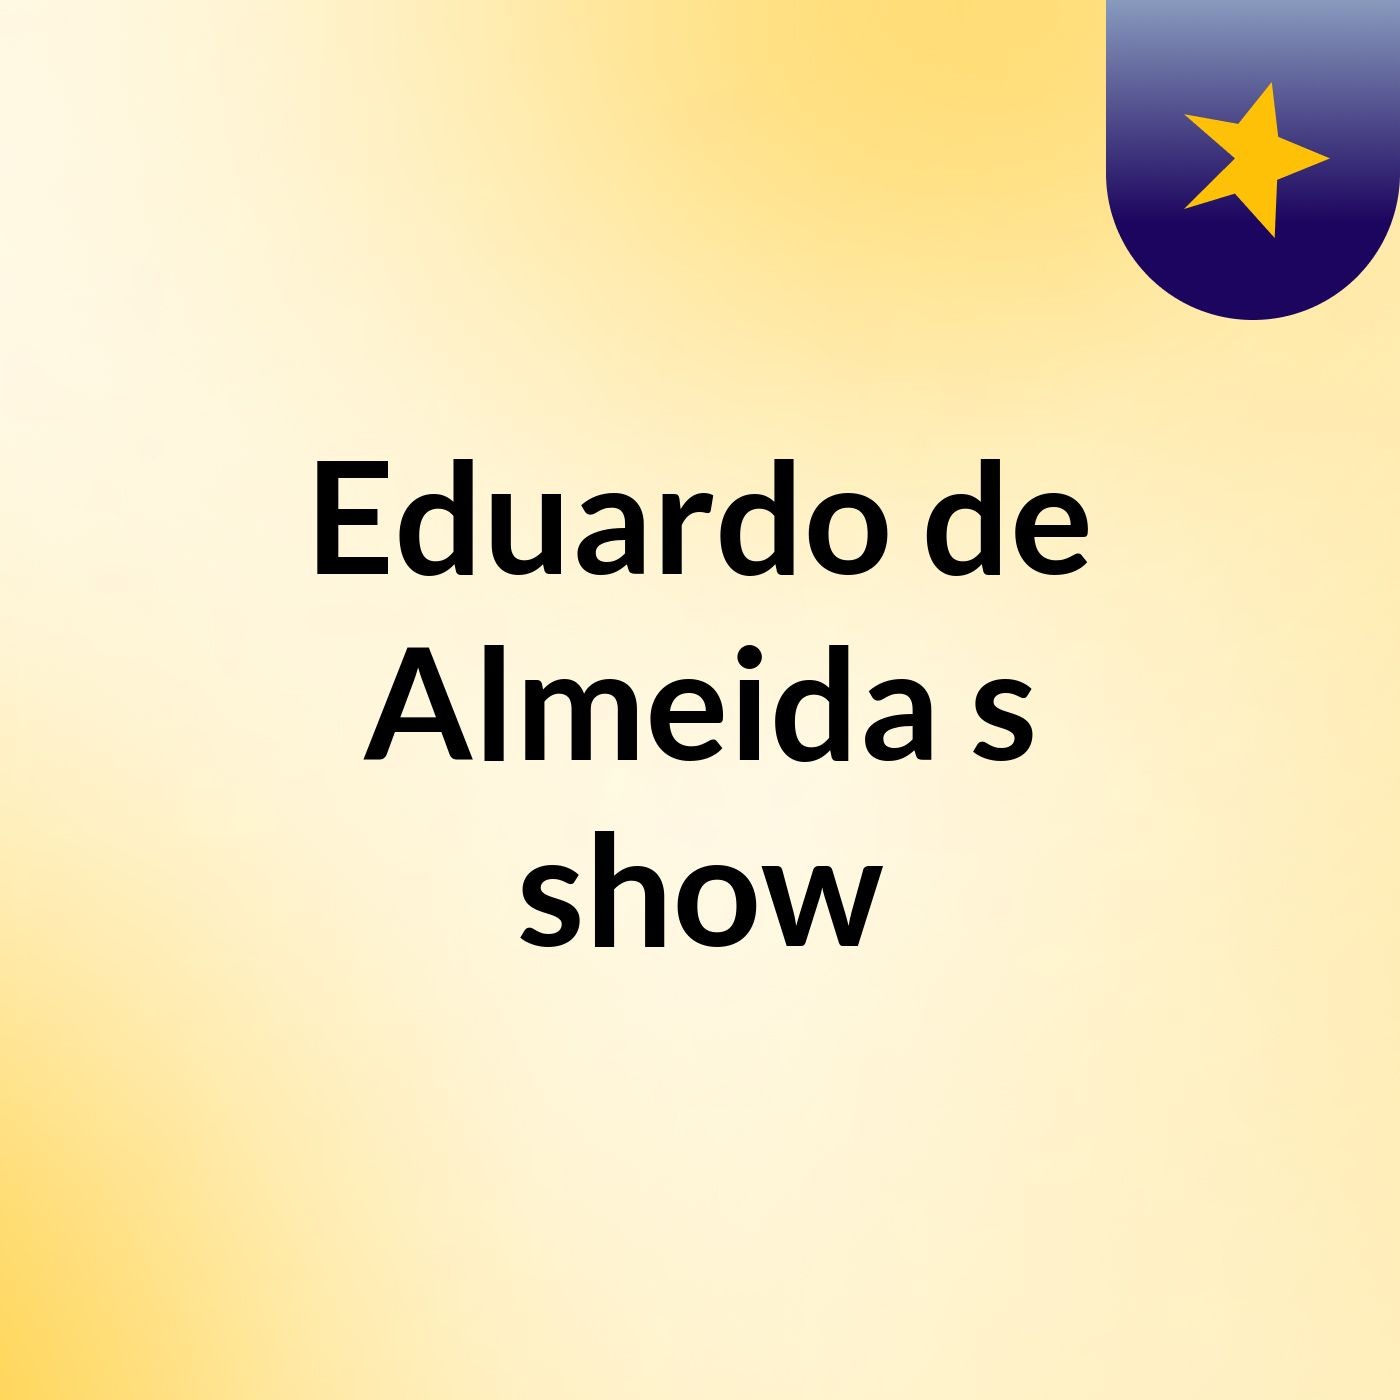 Eduardo de Almeida's show